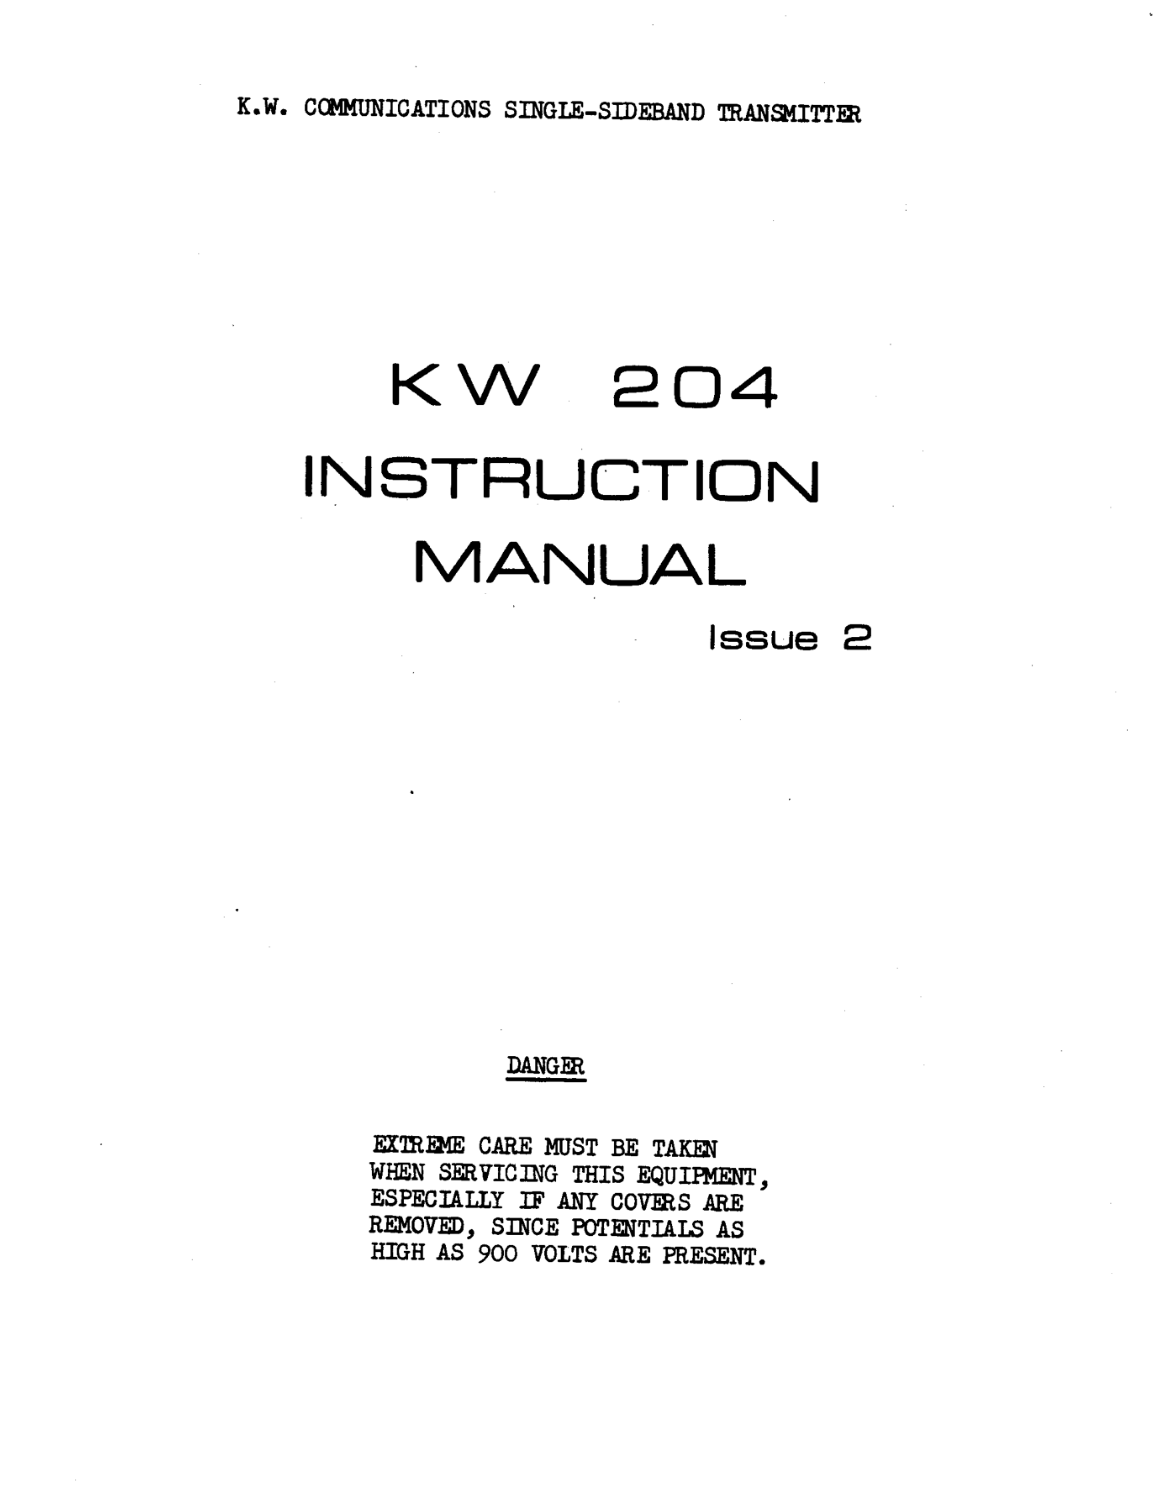 KW Electronics KW 204 - Instruction Manual (Issue 2)